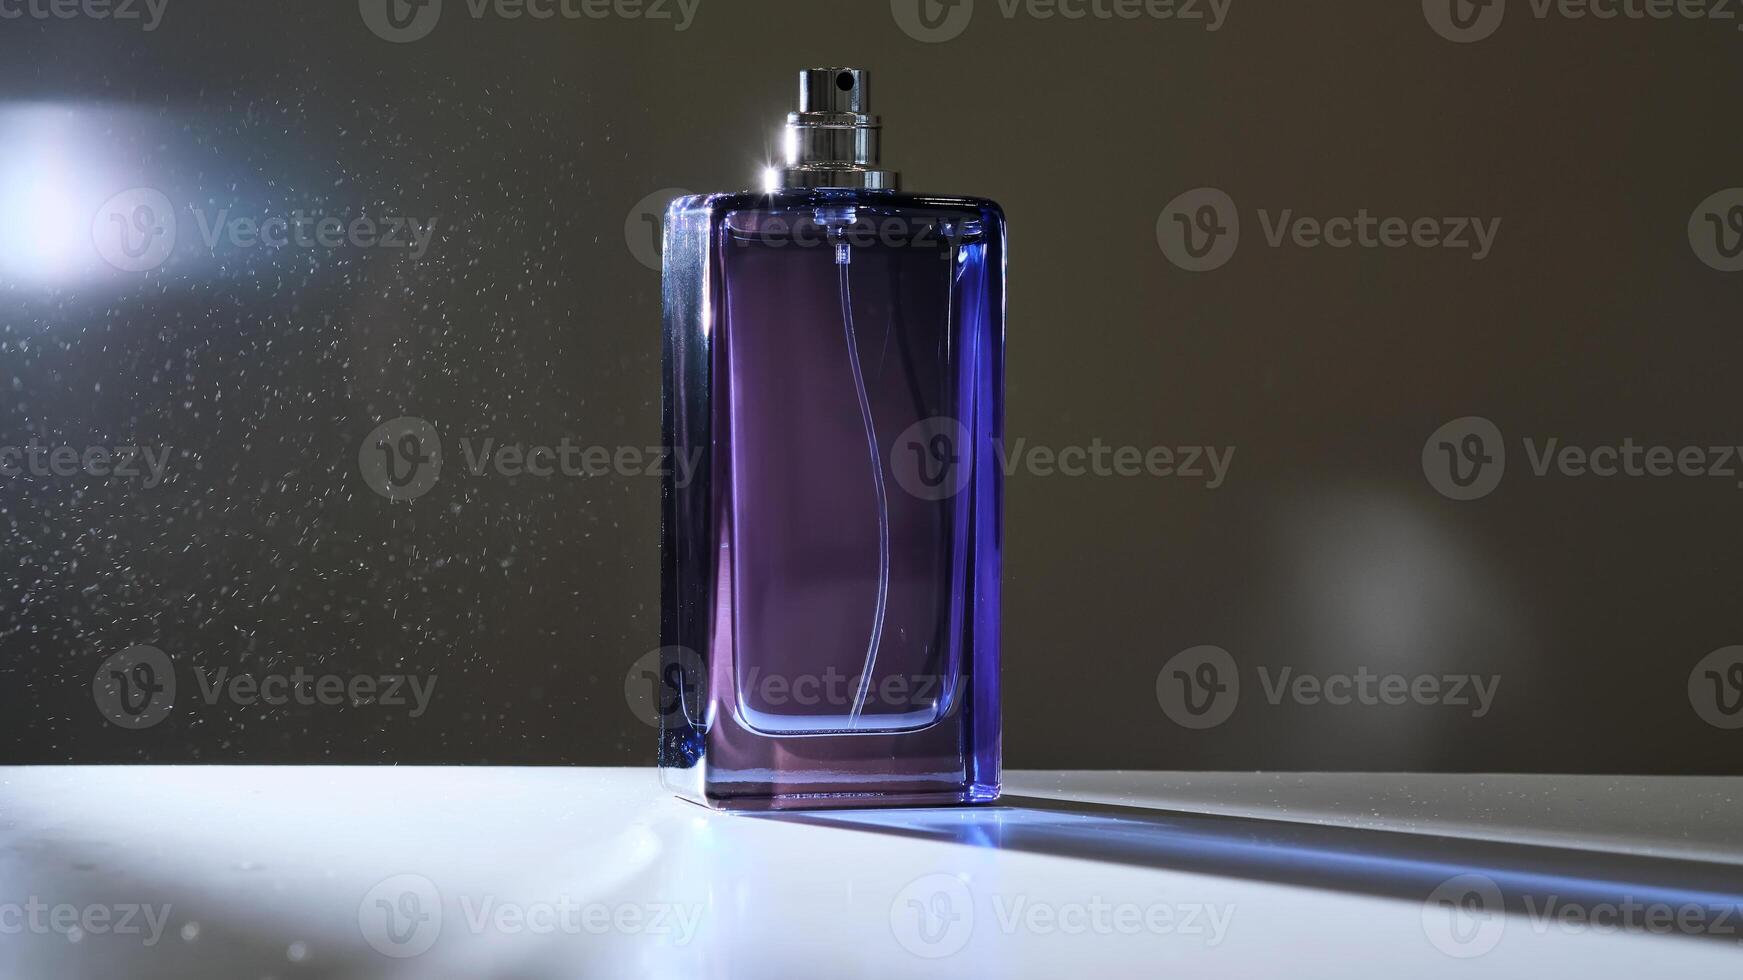 parfum verstuiven in een paars fles Aan een donker achtergrond. foto